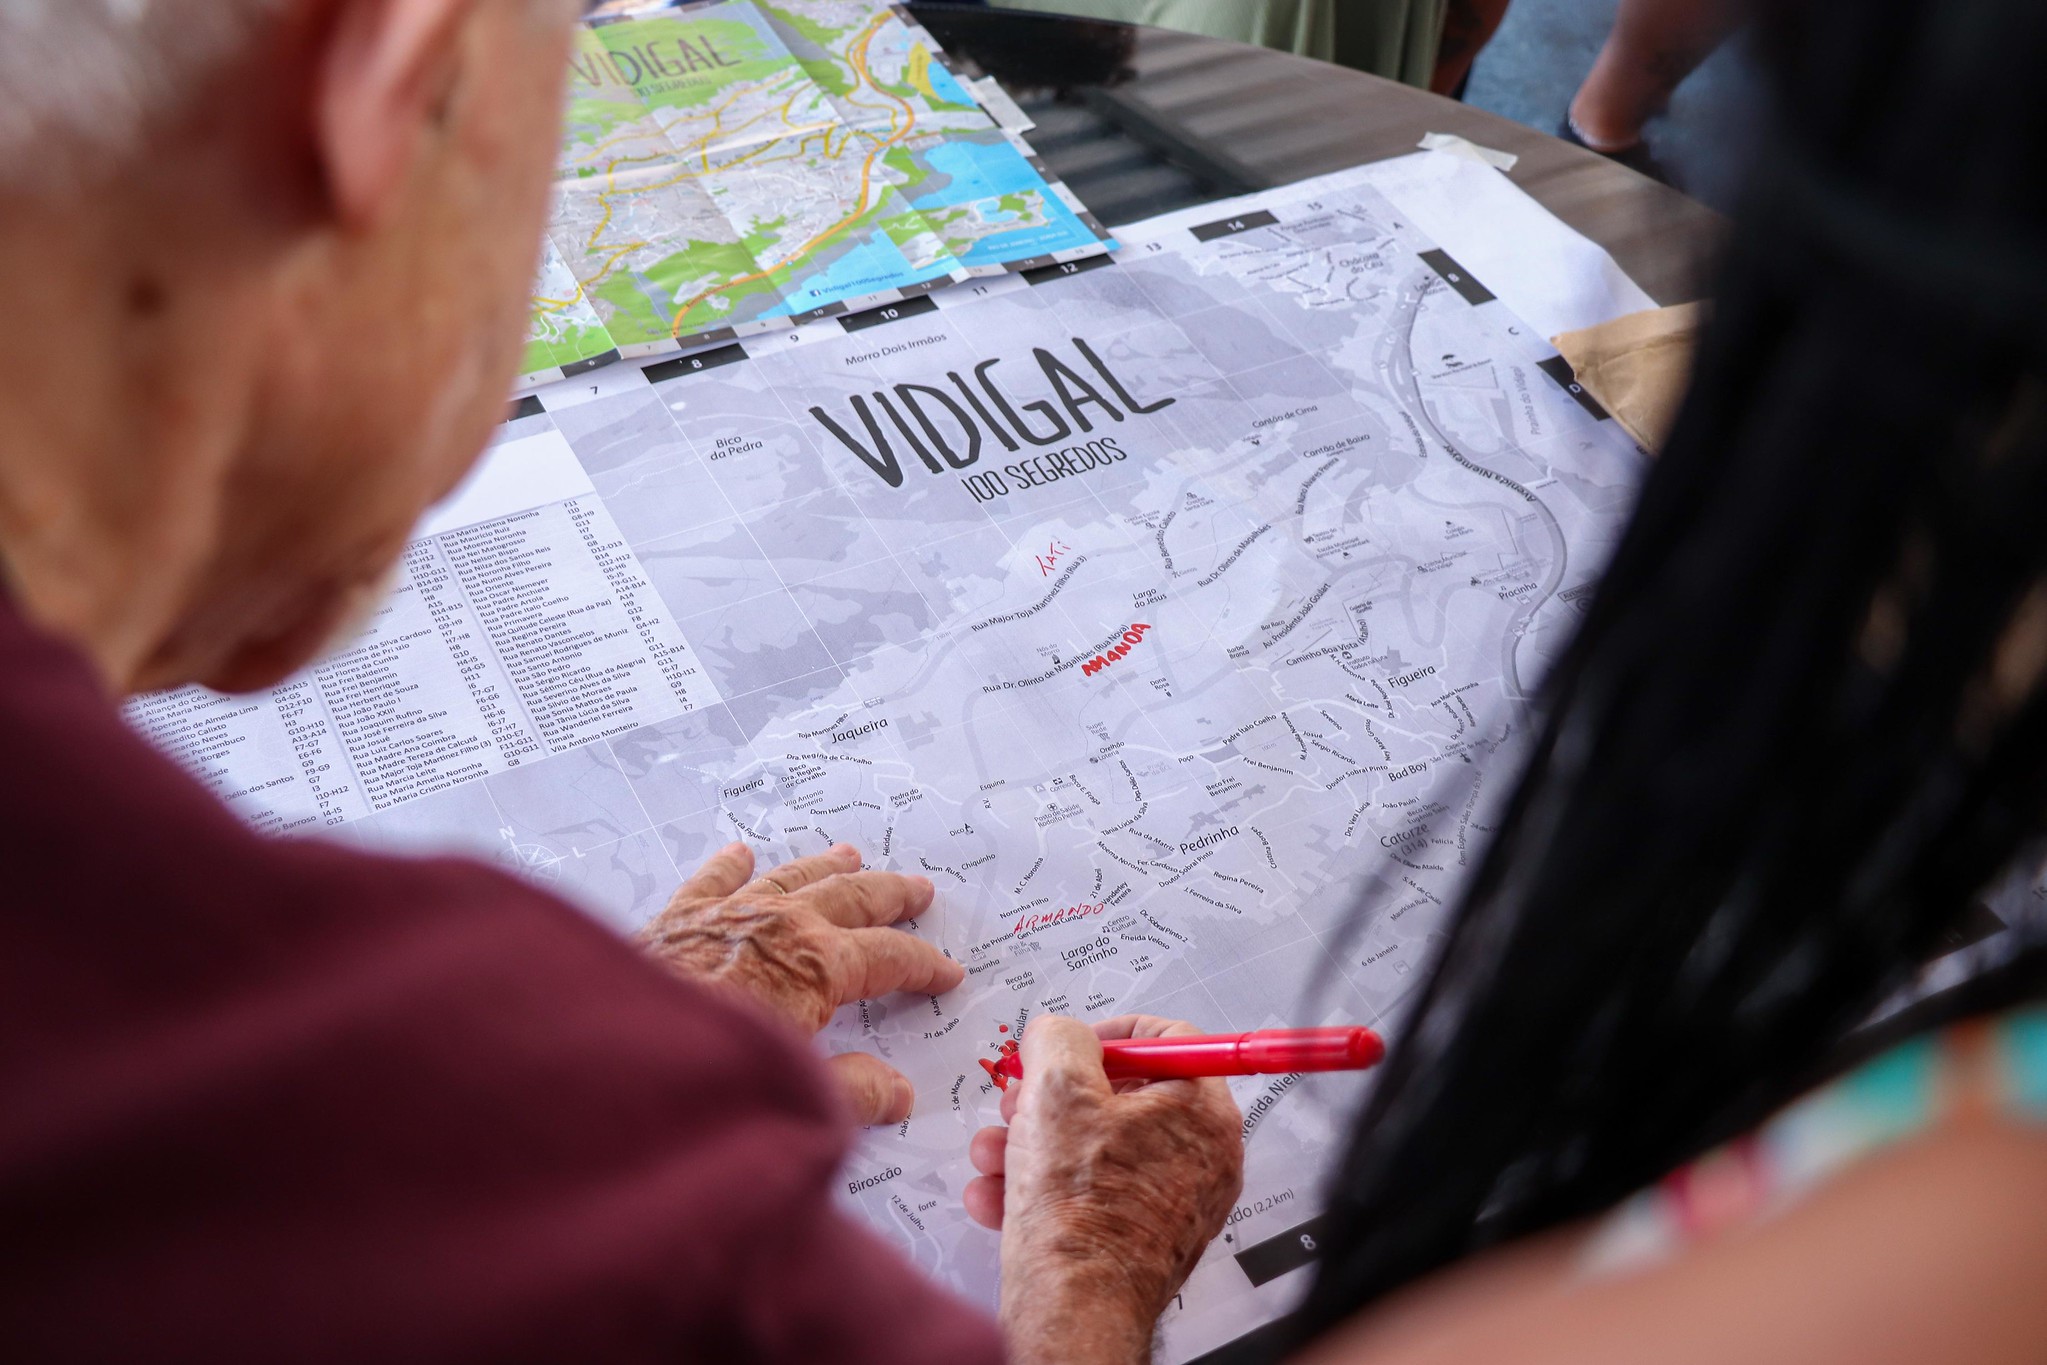 Mapa do Vidigal: os participantes indicaram os bairros em que moram escrevendo o próprio nome. Foto: Alexandre Cerqueira